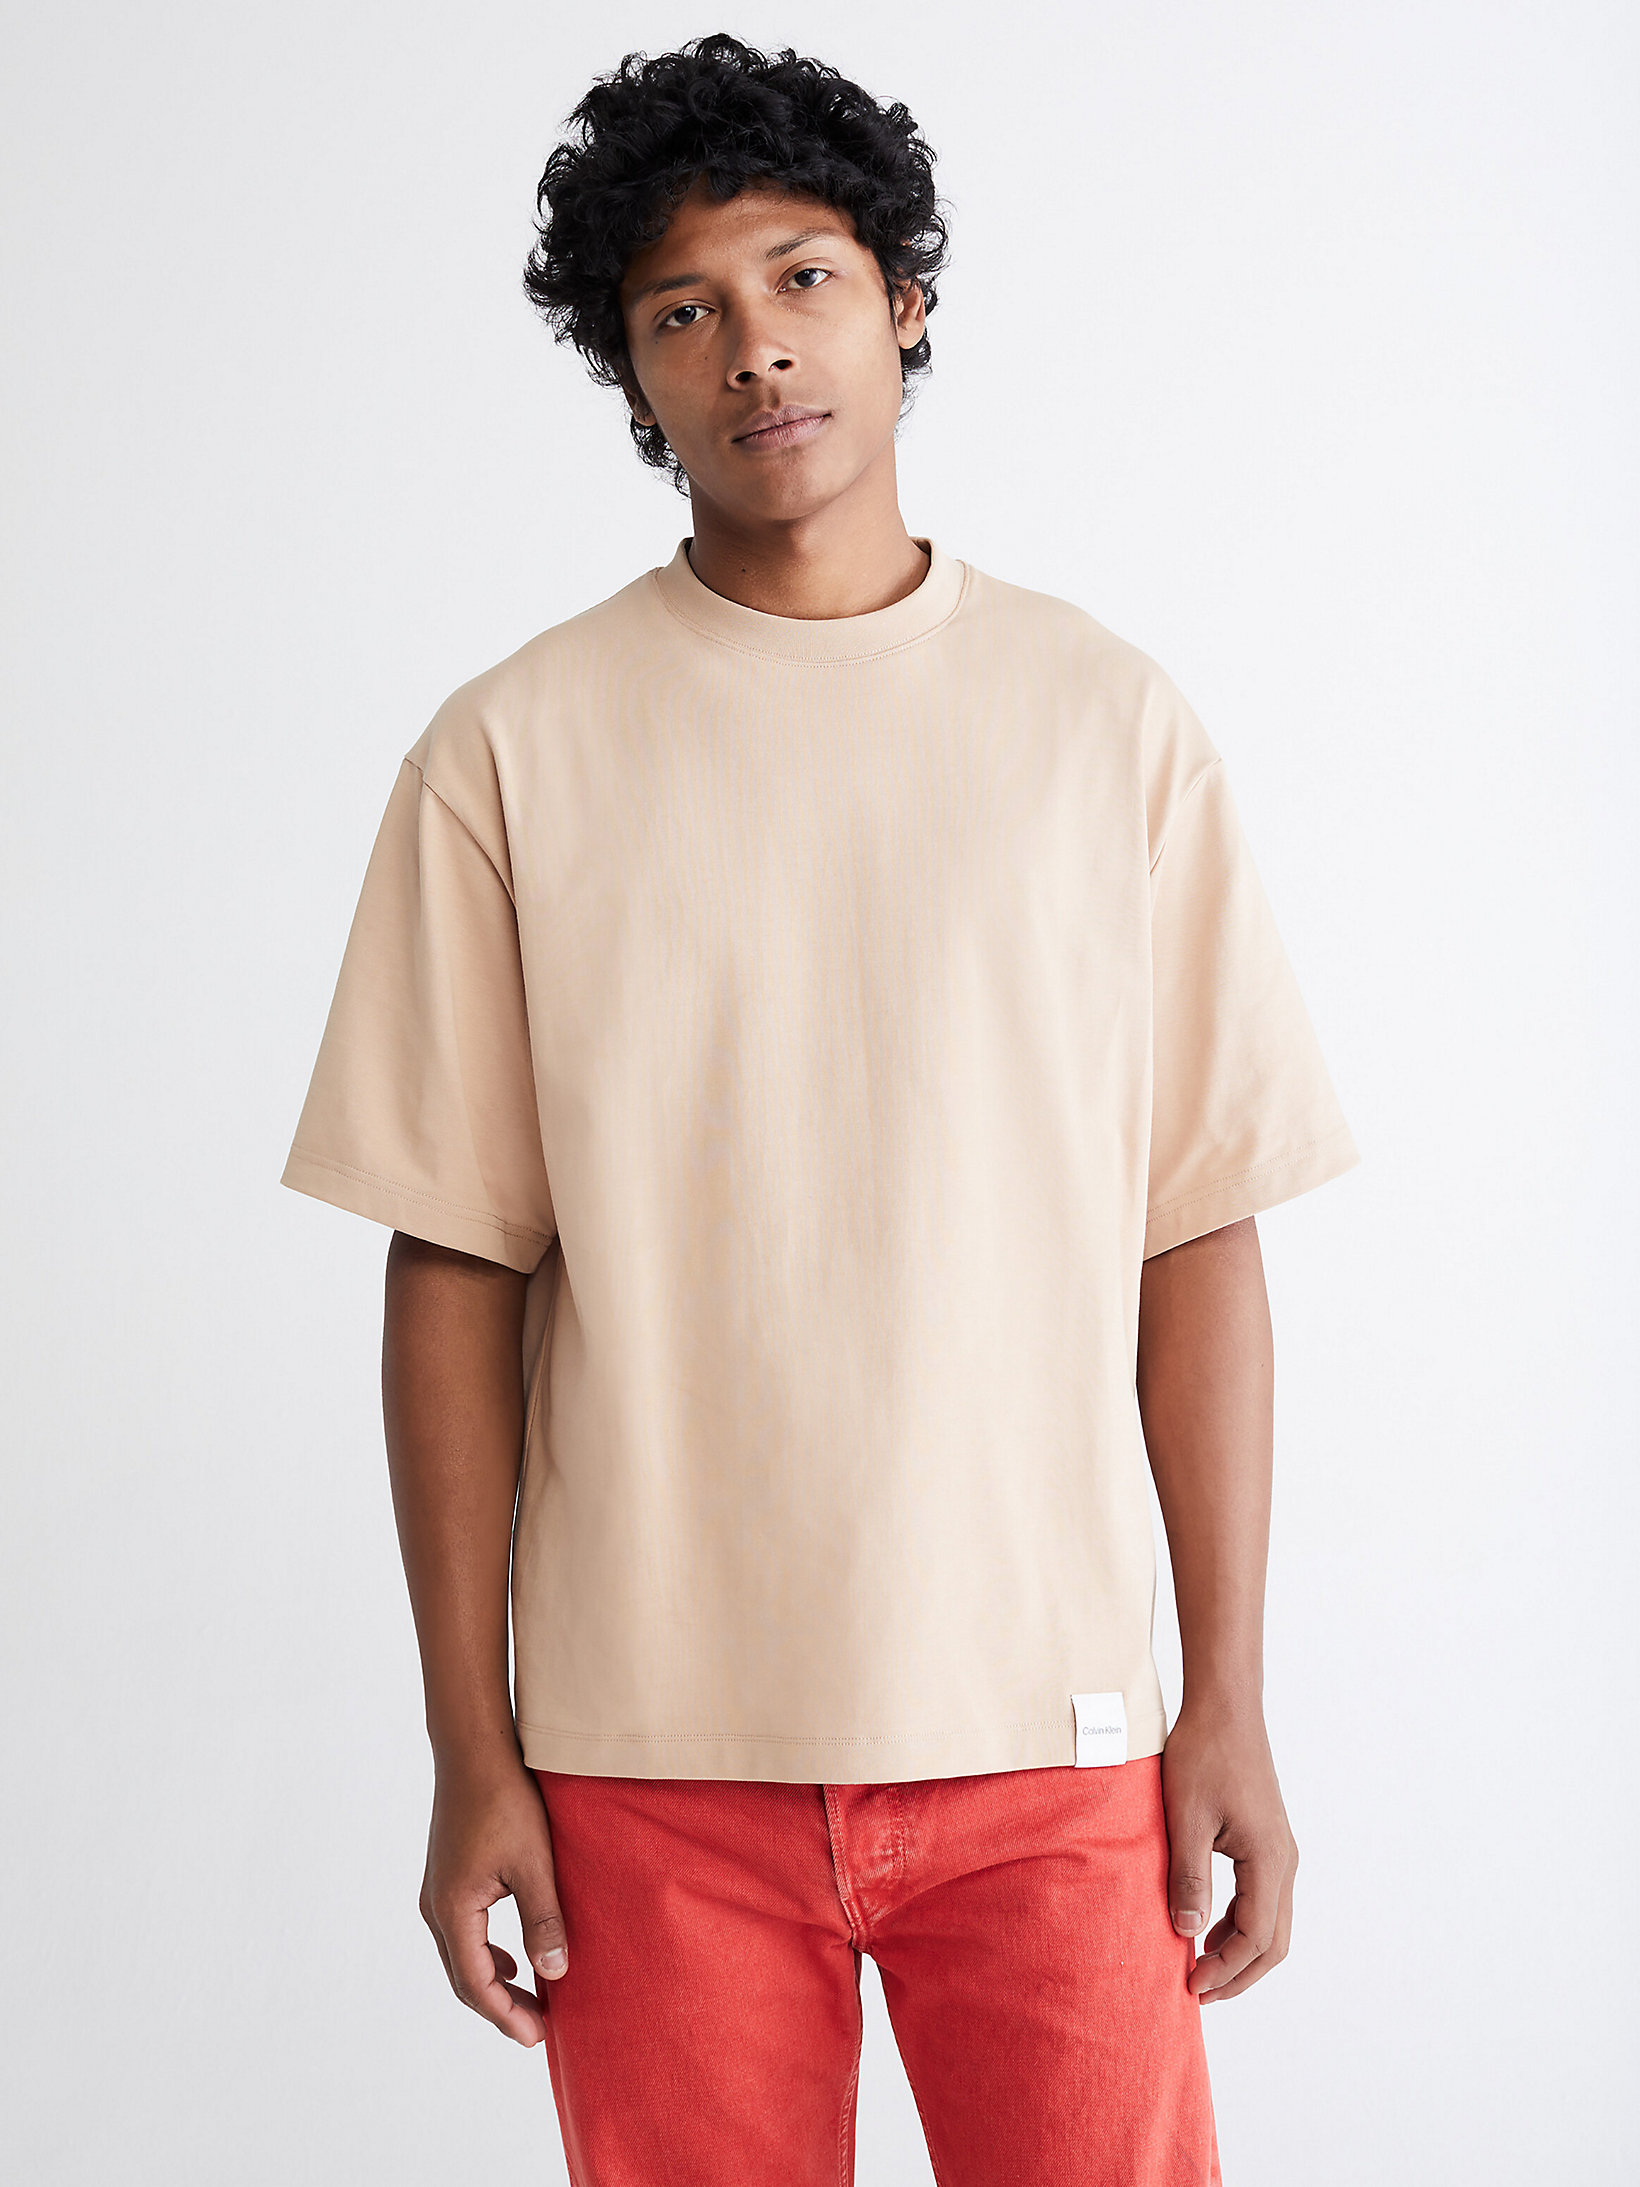 Sandrift > Lässiges Unisex-T-Shirt – CK Standards > undefined Herren - Calvin Klein